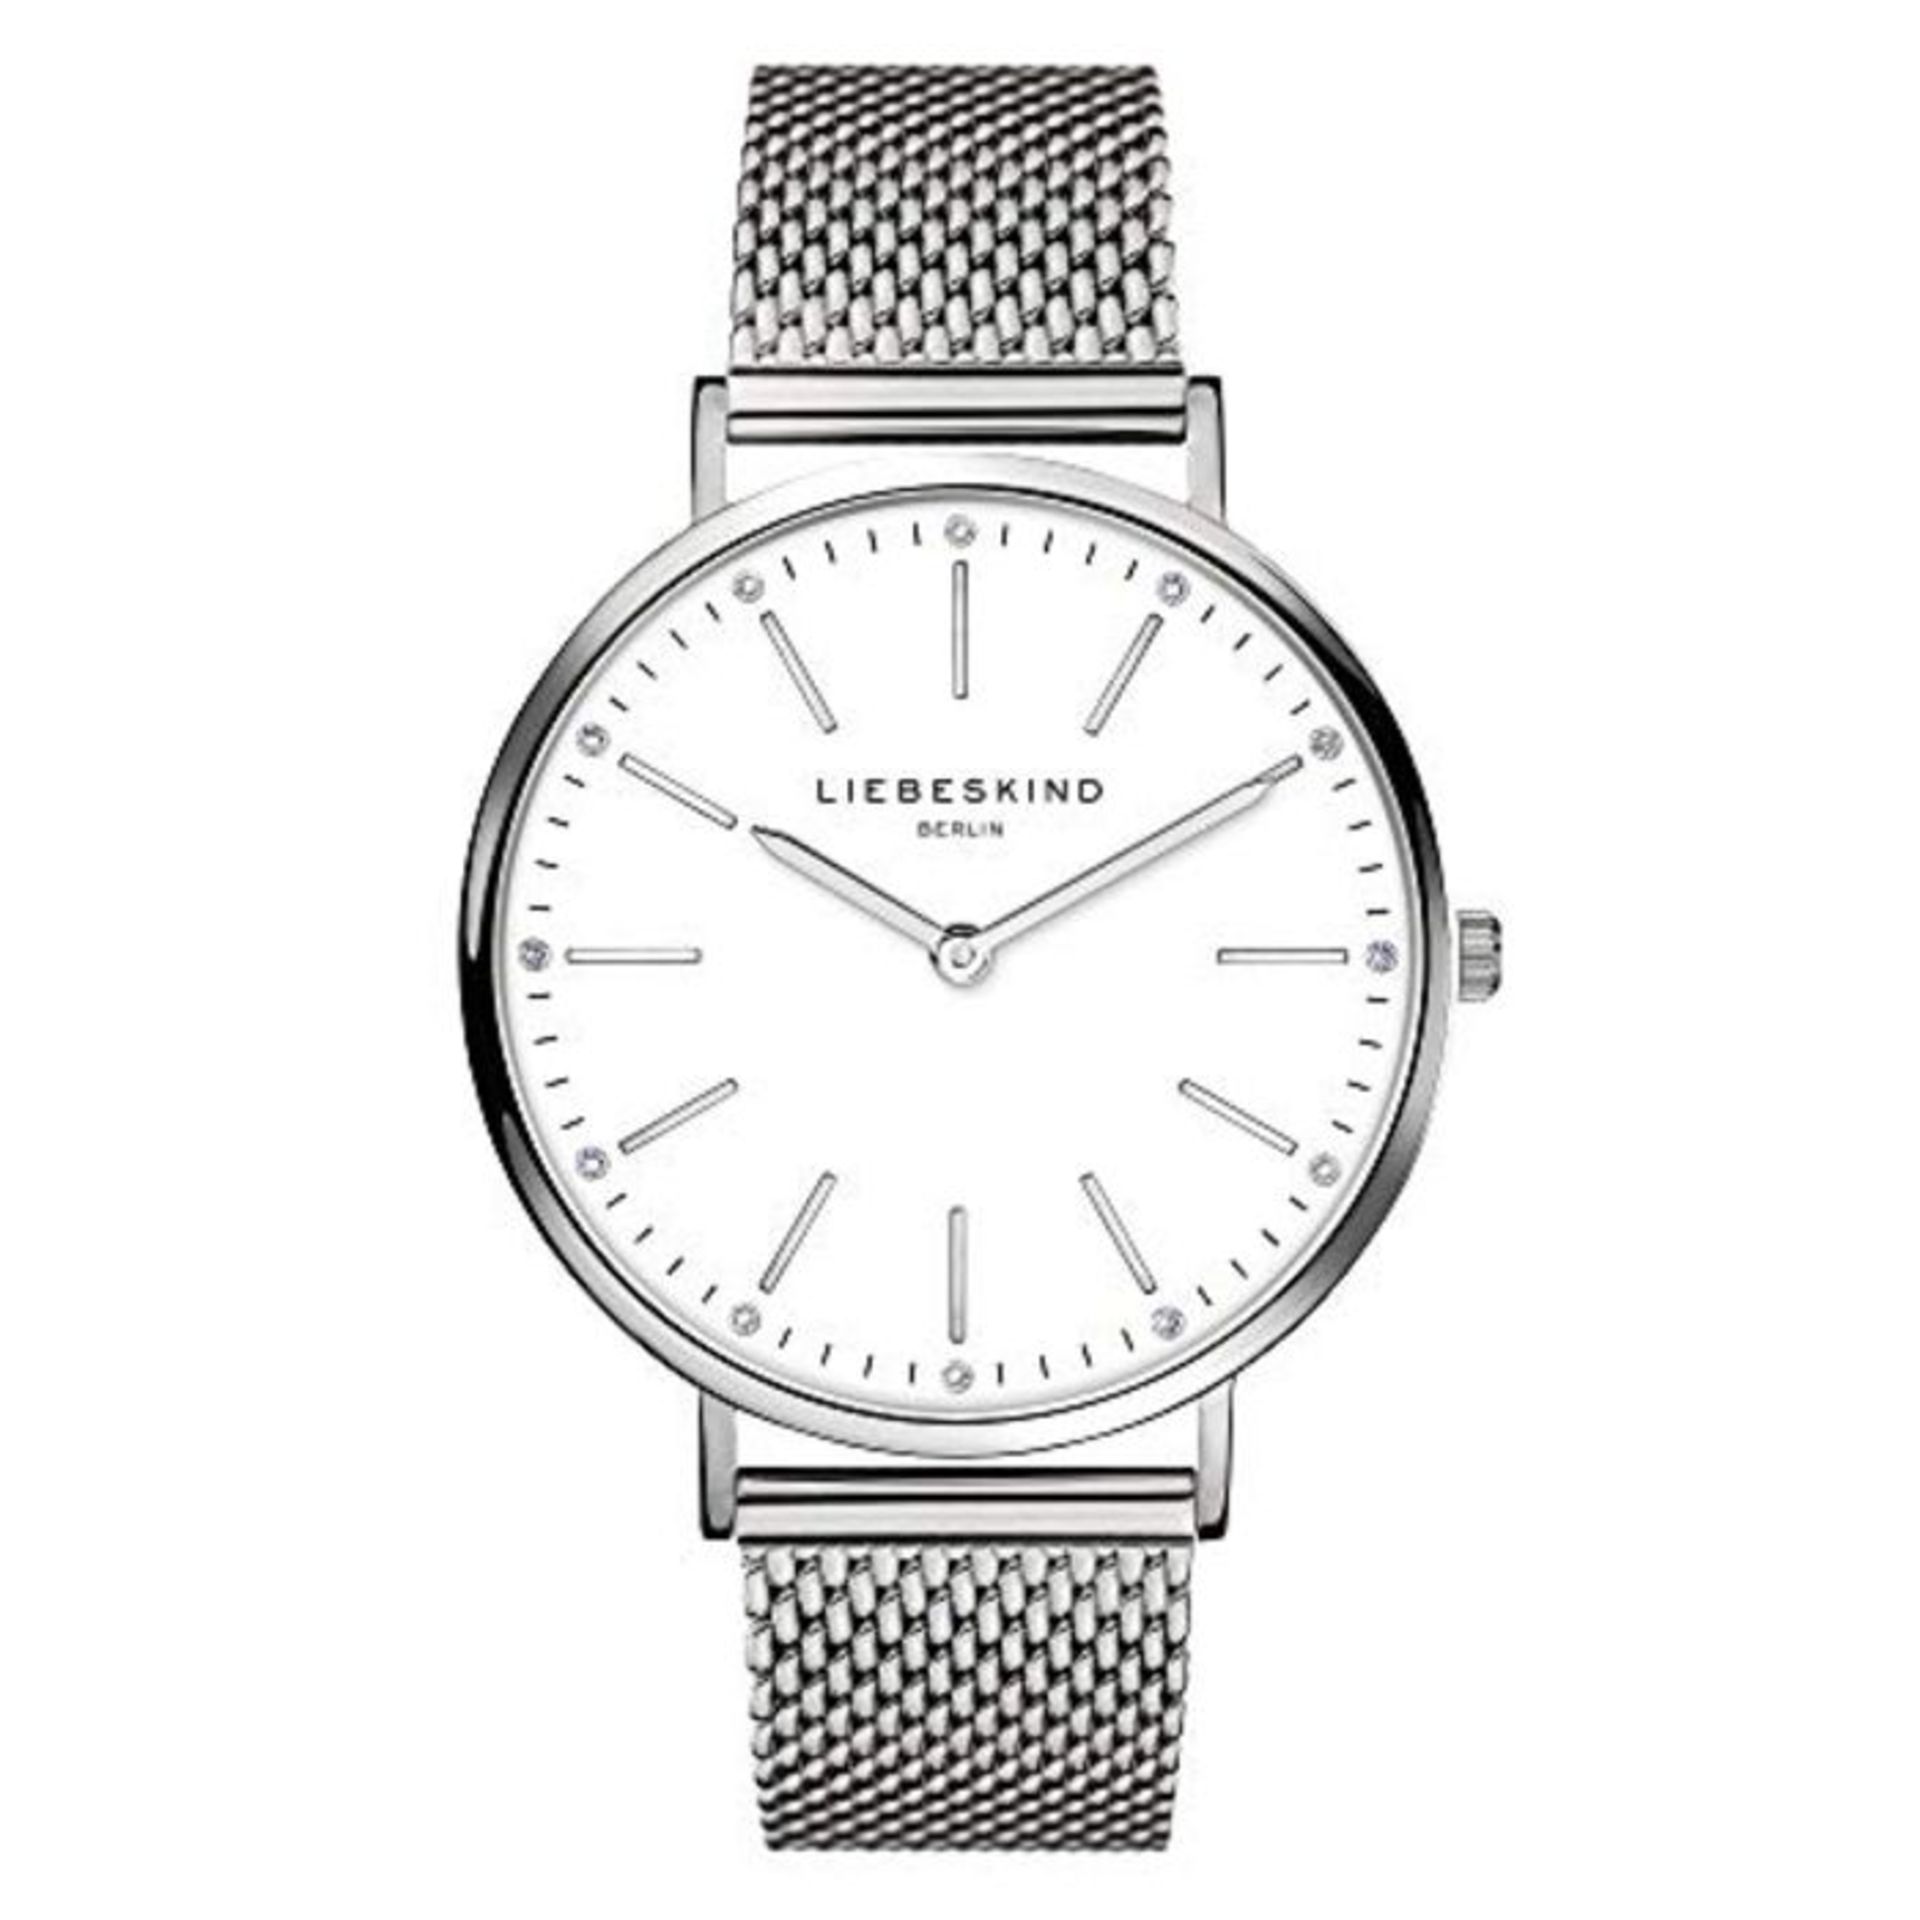 RRP £84.00 Liebeskind Berlin Damen Analog Quarz Uhr mit Edelstahl Armband LT-0187-MQ